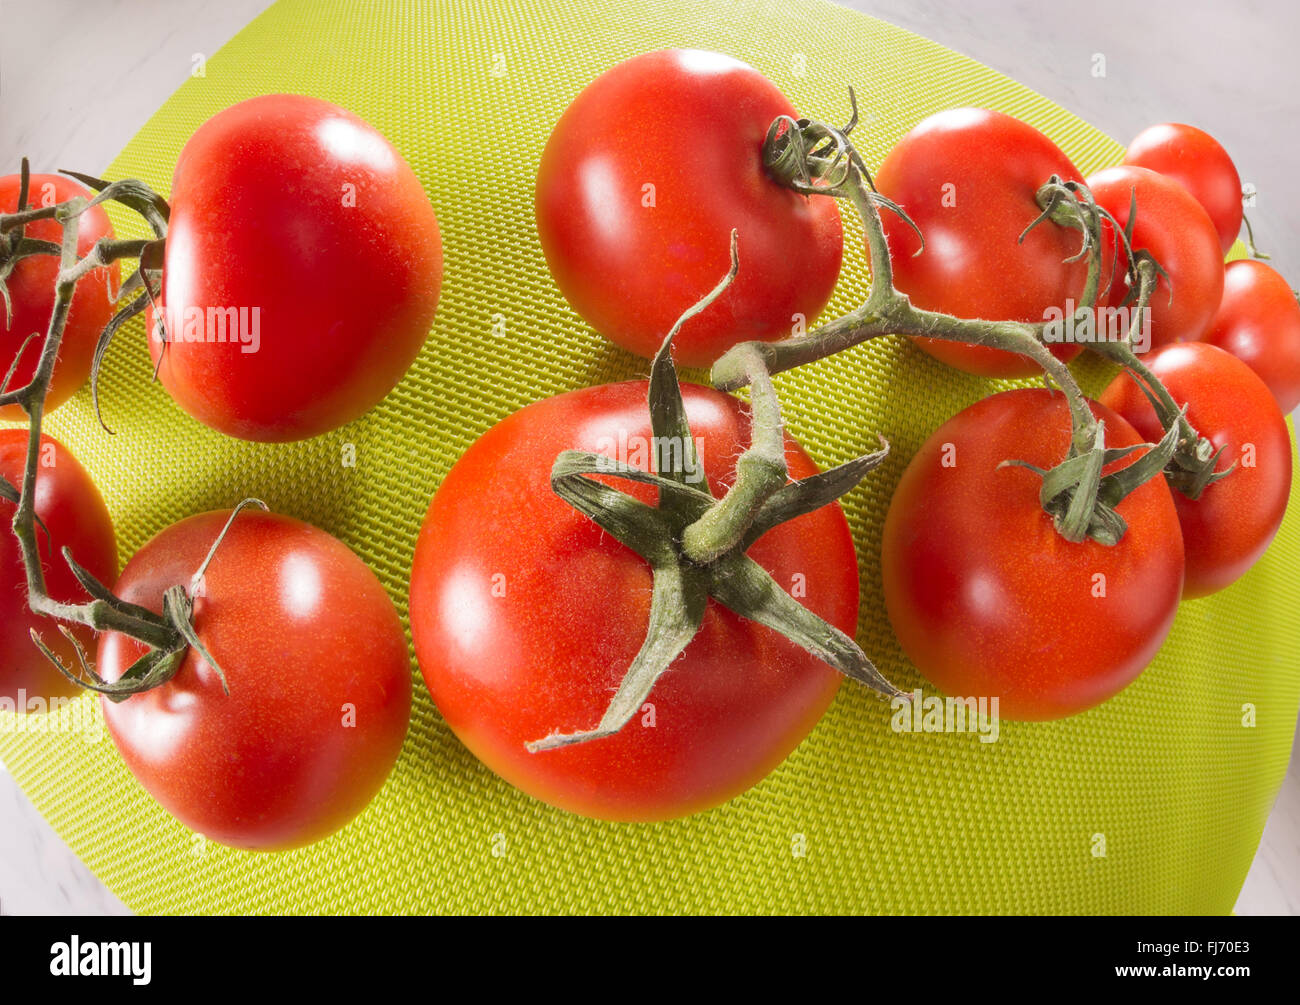 Tomaten auf einem grünen Hintergrund, fisheye-Objektiv, Weitwinkel Verzeichnung des Objektivs weit, riesige Runde rot-grün, glänzend, frisch mit Stielen, bu Stockfoto